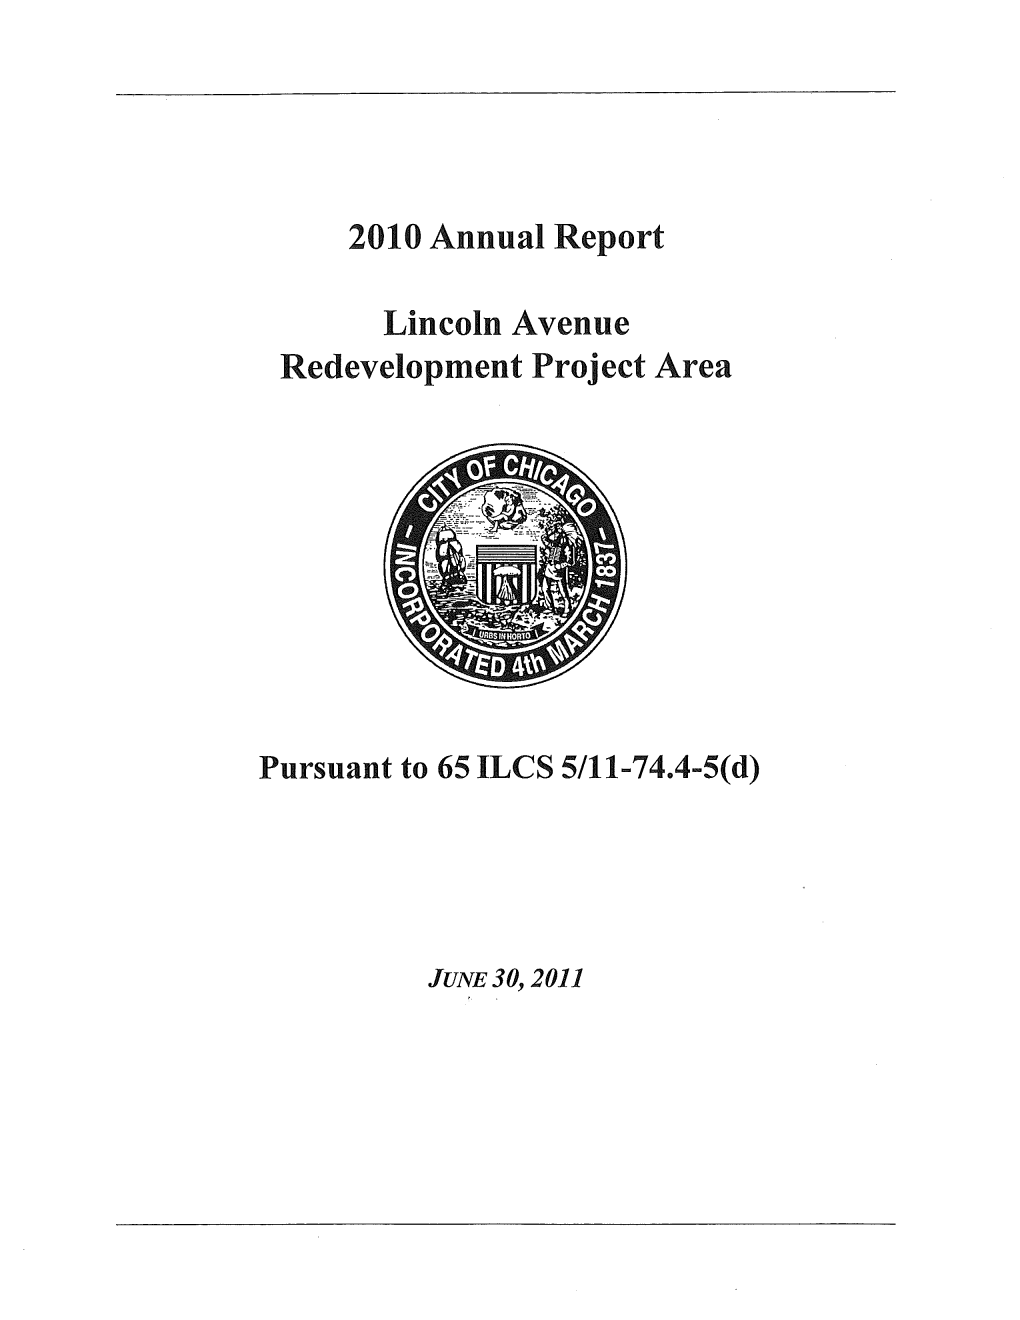 2010 Annual Report Lincoln Avenue